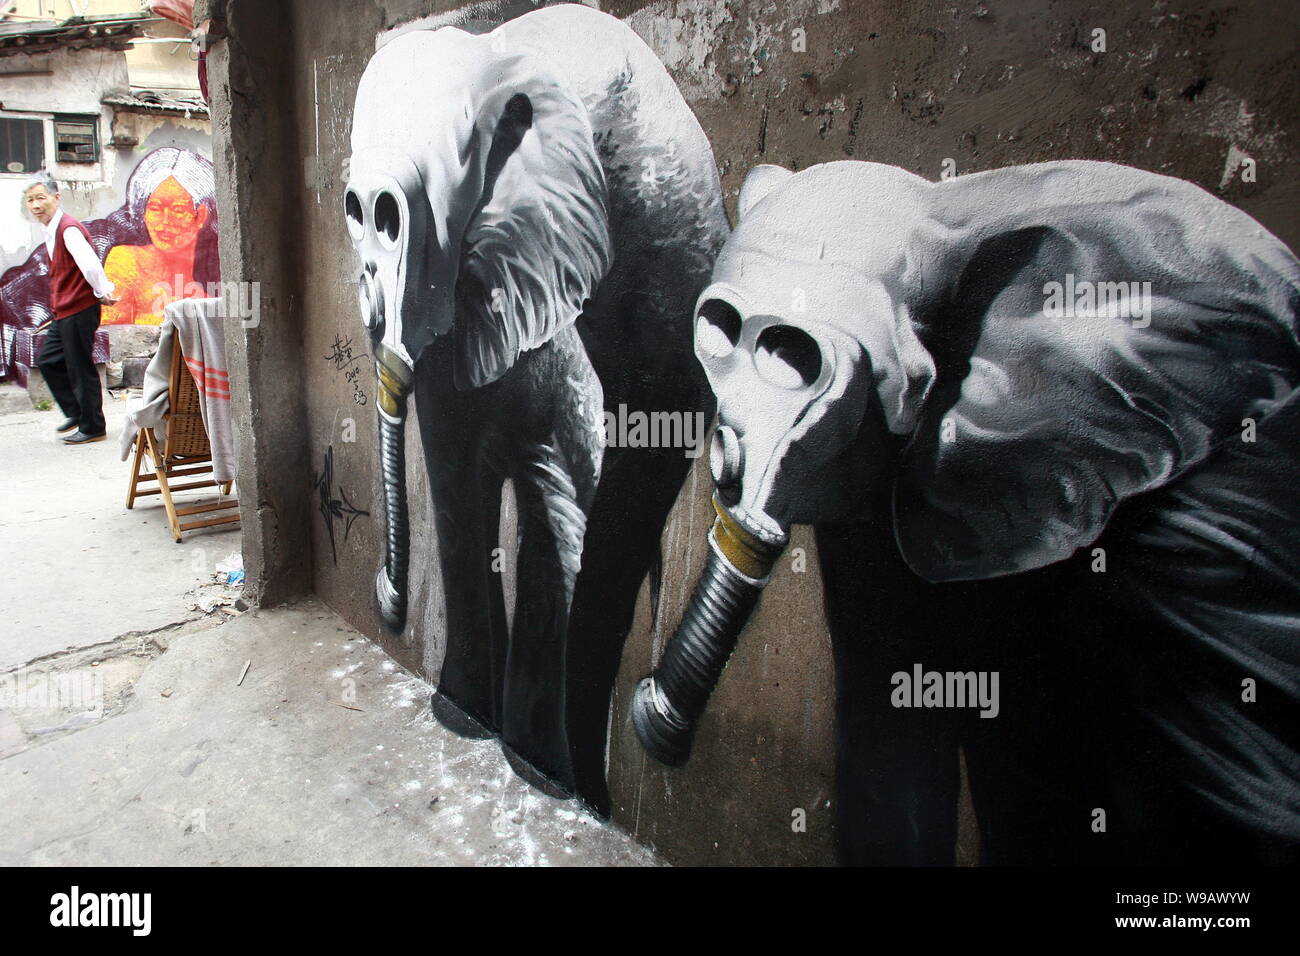 Blick auf ein Gemälde von Elefanten an der Wand eines Hauses in der Spur eines Slums in Shanghai, China, 26. Mai 2010. Stockfoto